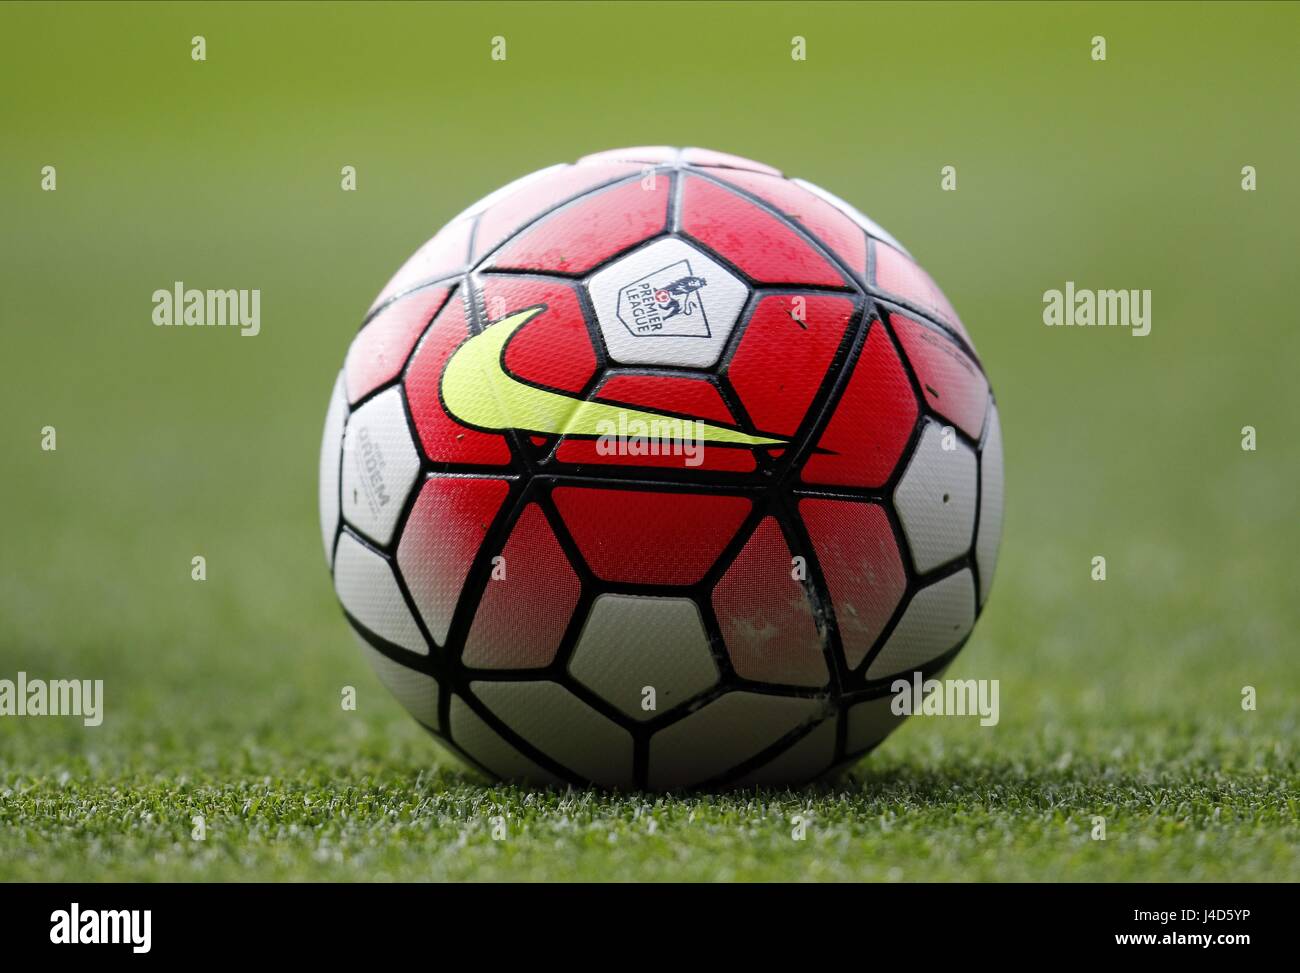 Nike football e imágenes de alta resolución Alamy